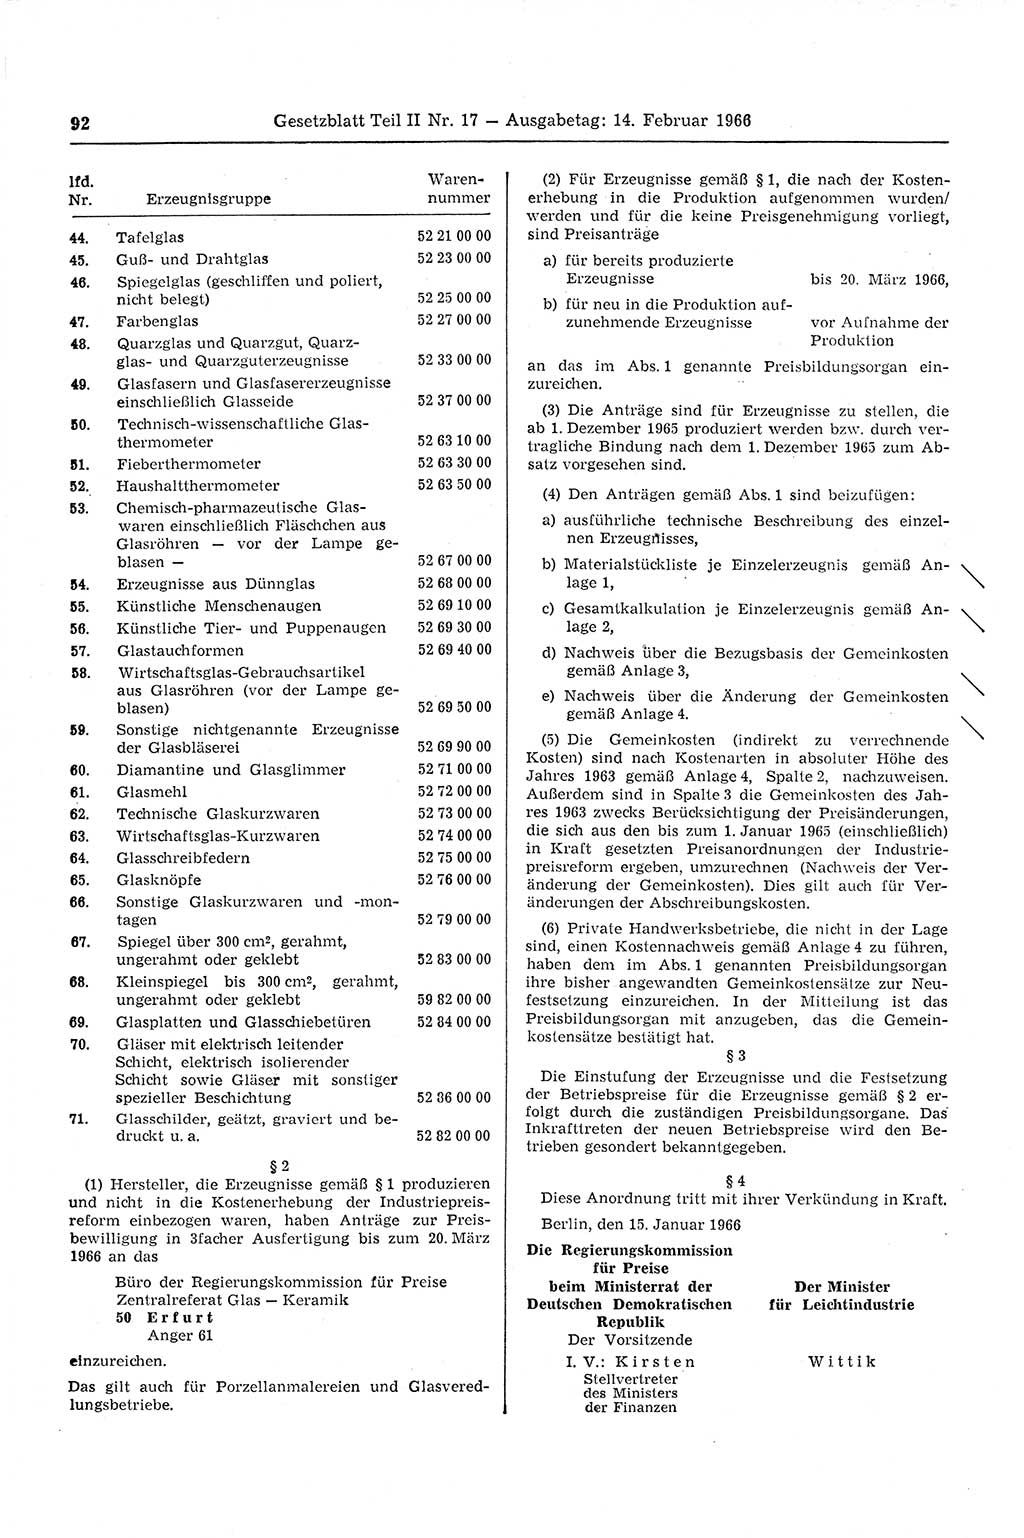 Gesetzblatt (GBl.) der Deutschen Demokratischen Republik (DDR) Teil ⅠⅠ 1966, Seite 92 (GBl. DDR ⅠⅠ 1966, S. 92)